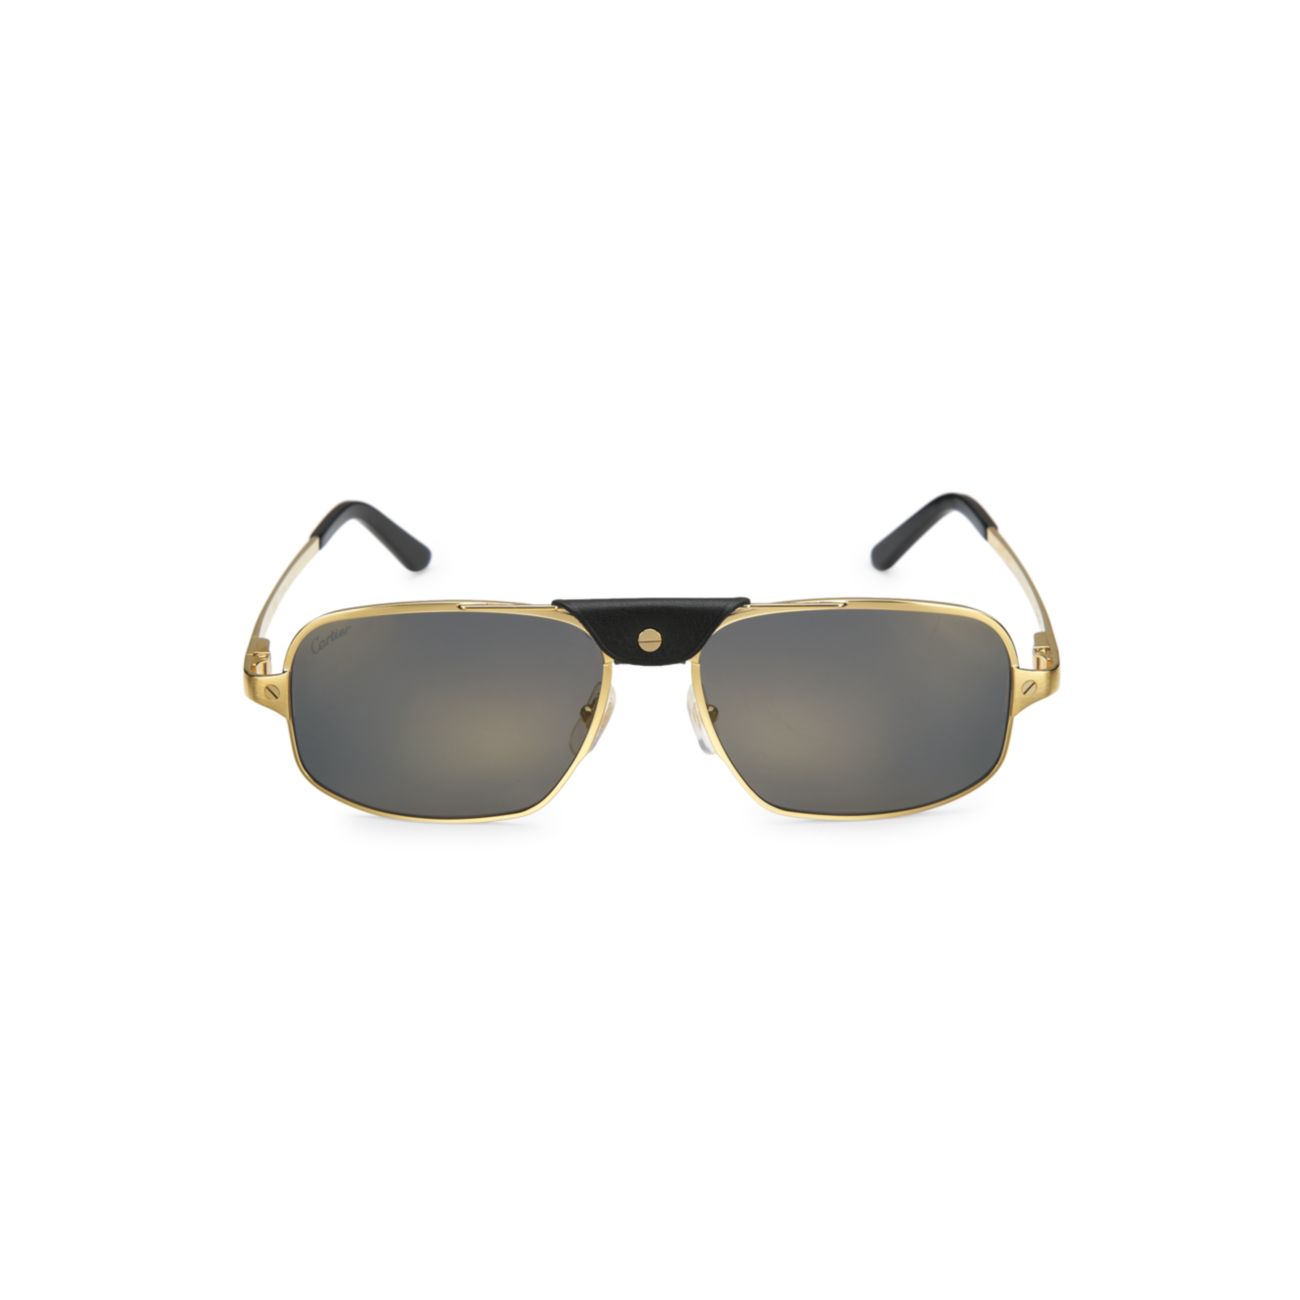 Прямоугольные солнцезащитные очки Santos 60 мм Cartier